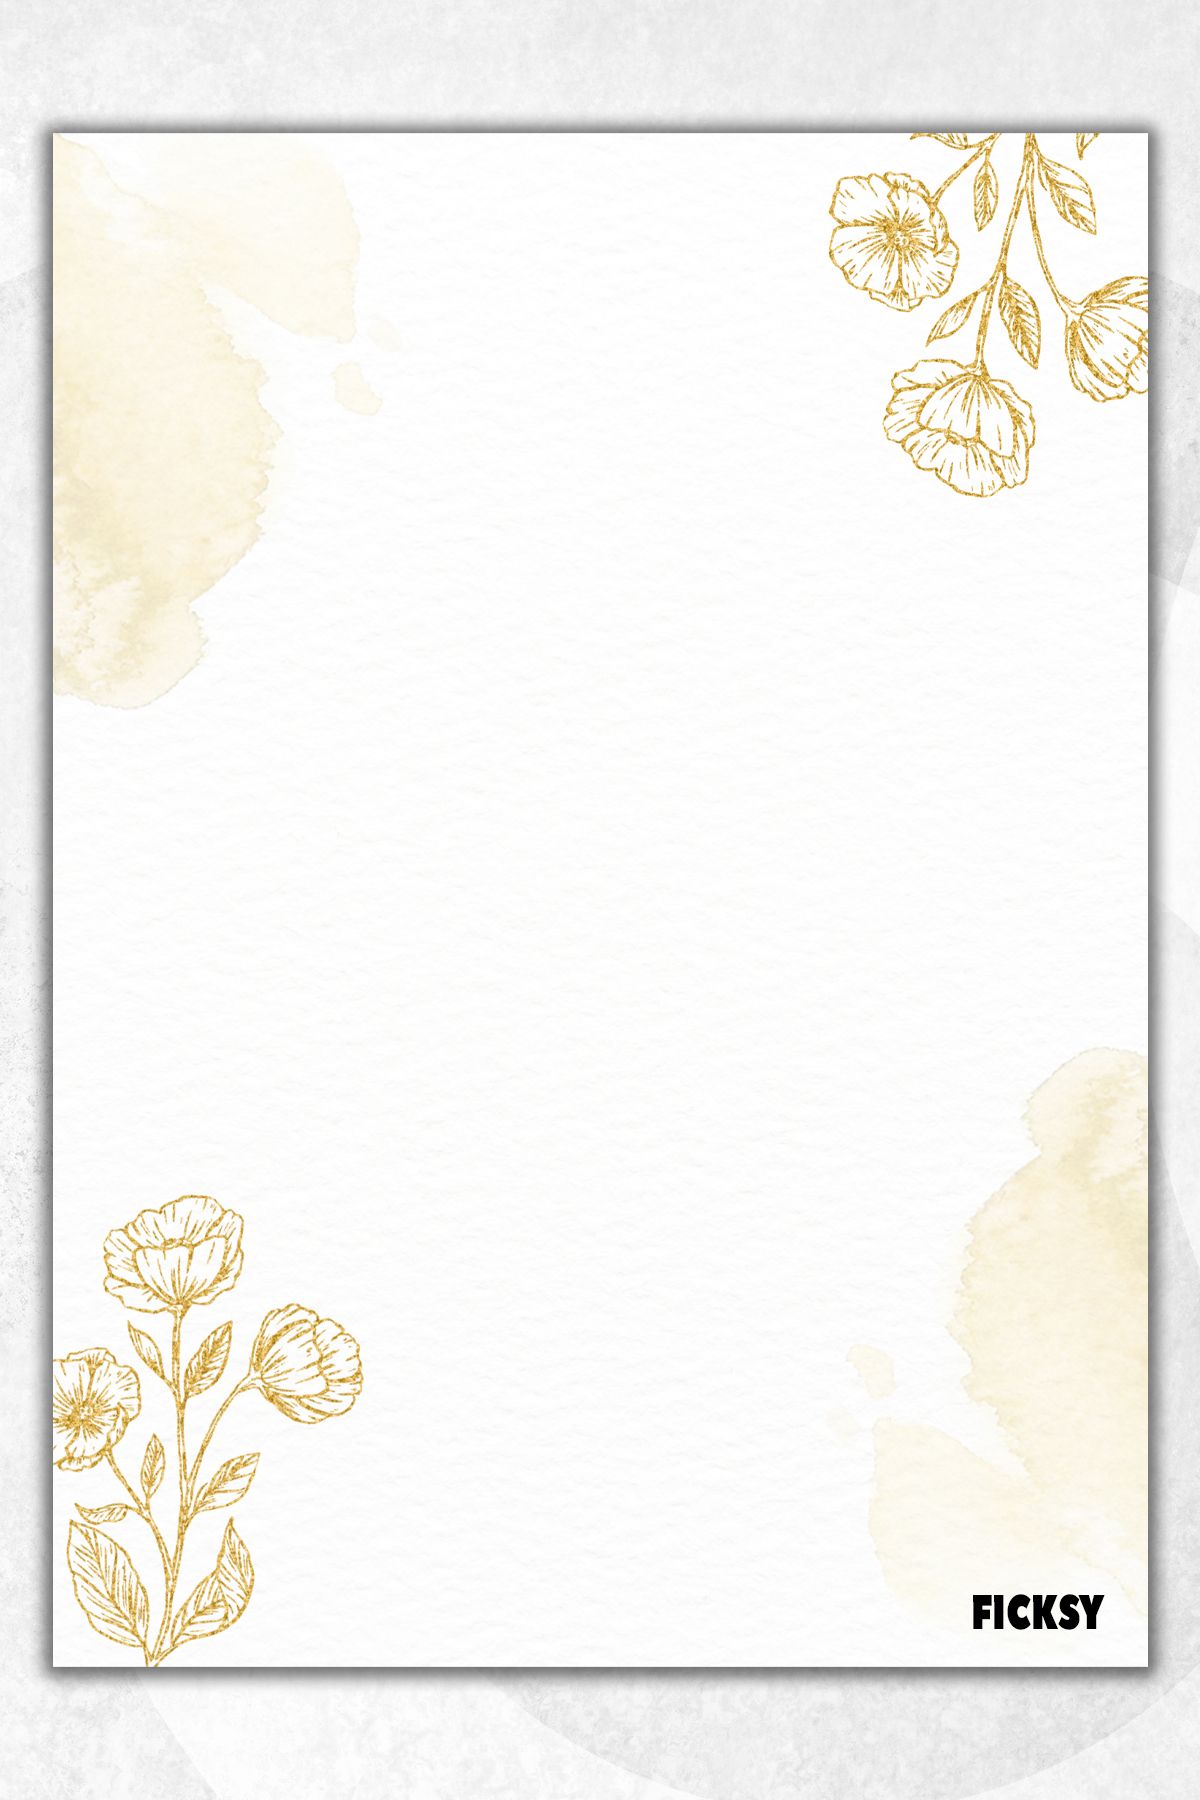 Ficksy Çiçek Not Kağıdı - A5 Ebat - 50 Yaprak - Notepad - Memopad - Bloknot - To Do List